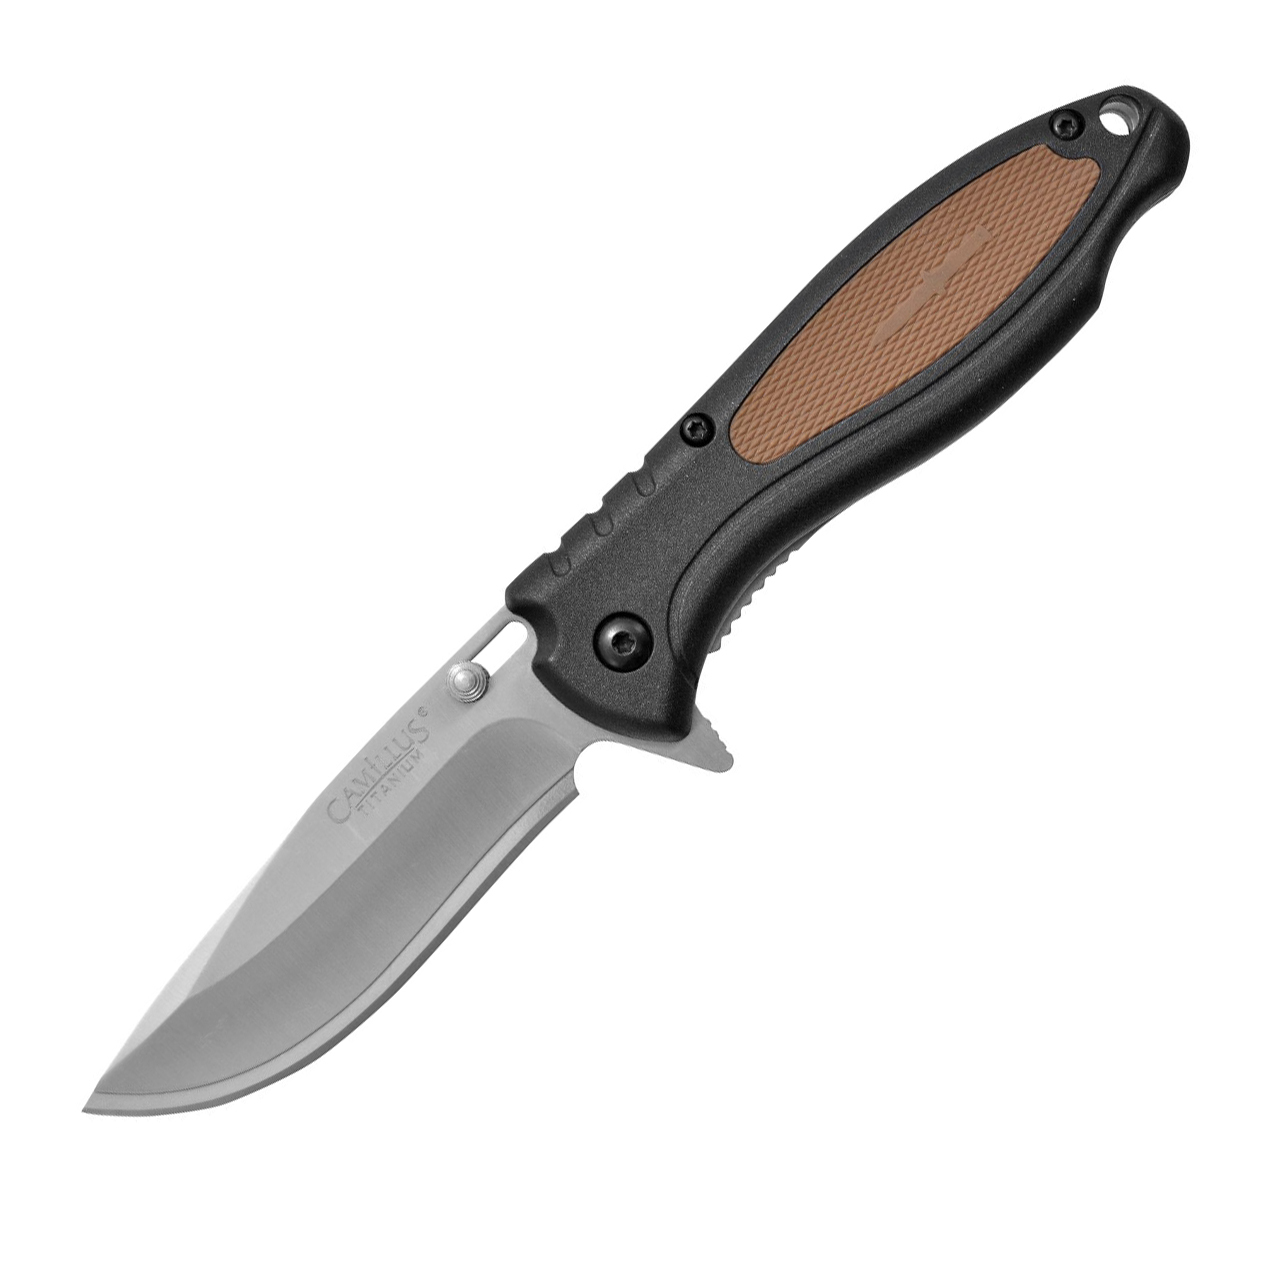 ножи fissman nakajima в деревянной подставке 420j2 сталь 6шт Нож складной Camillus Black TigerSharp, сталь 420J2, рукоять термопластик GFN, чёрно-коричневый